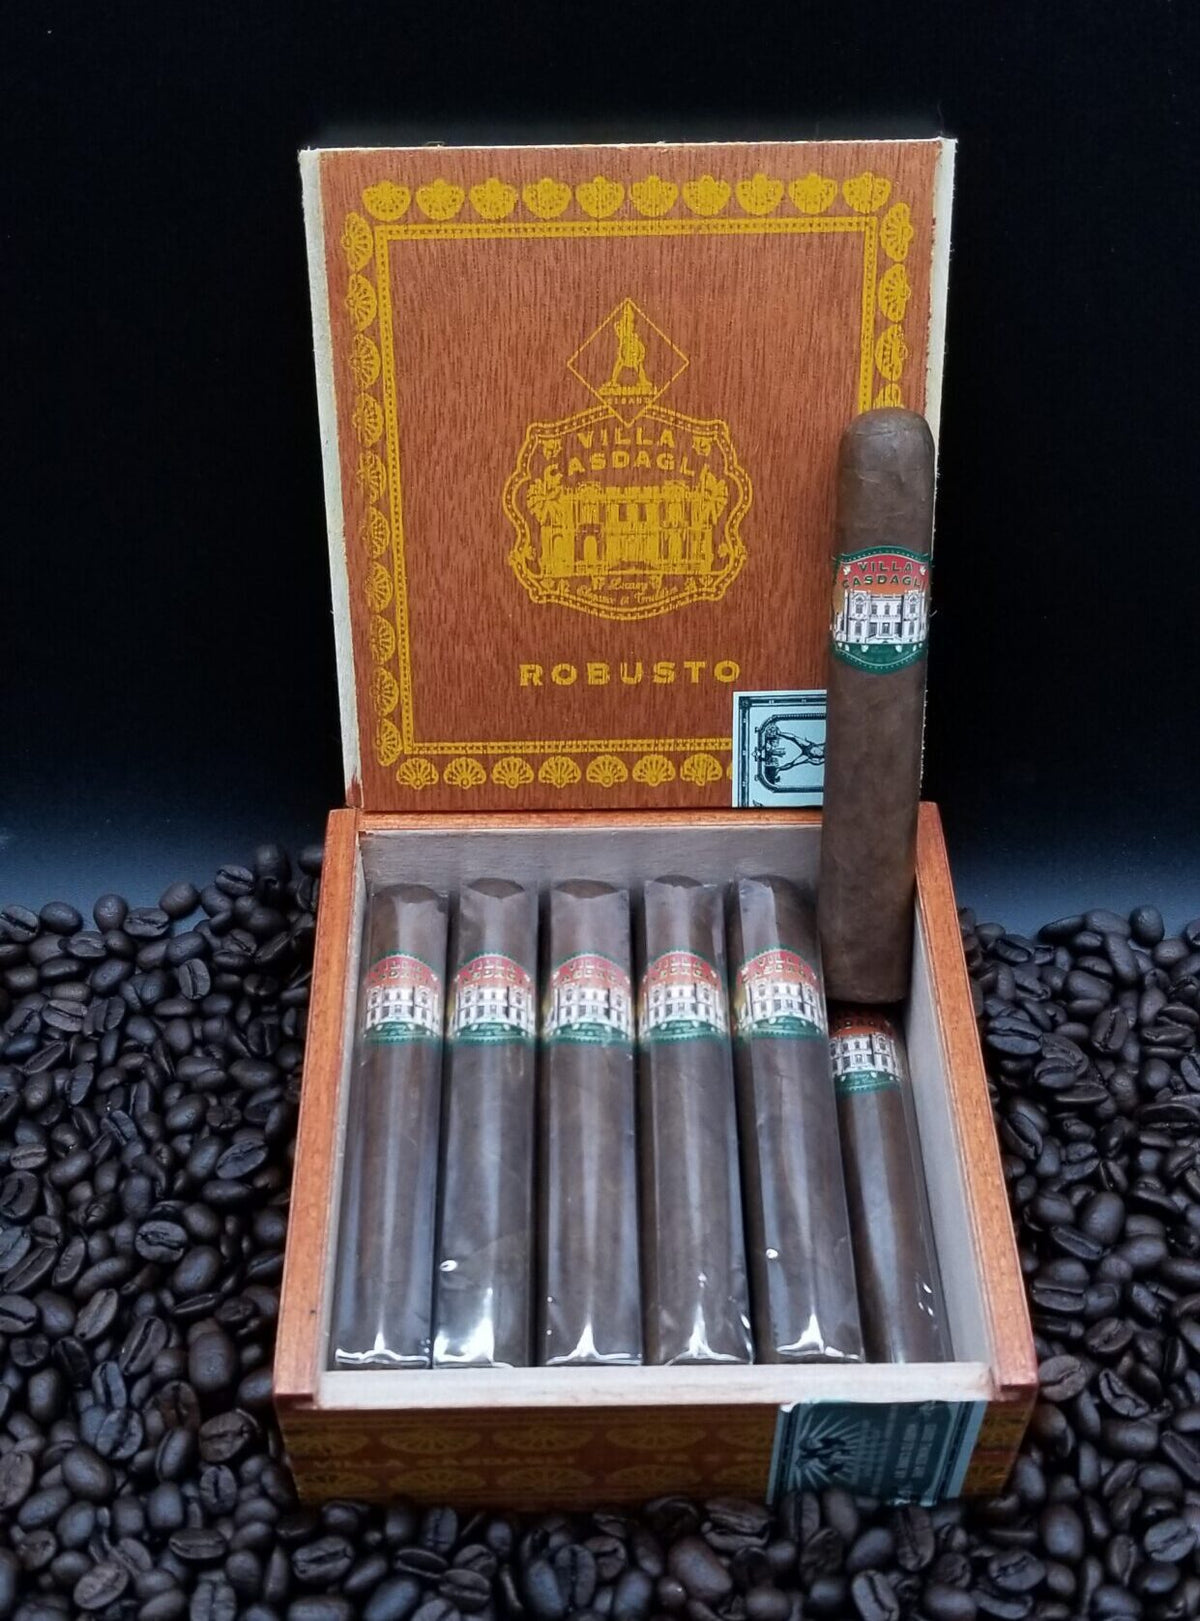 Casdagli - Villa Casdagli Robusto cigars supplied by Sir Louis Cigars